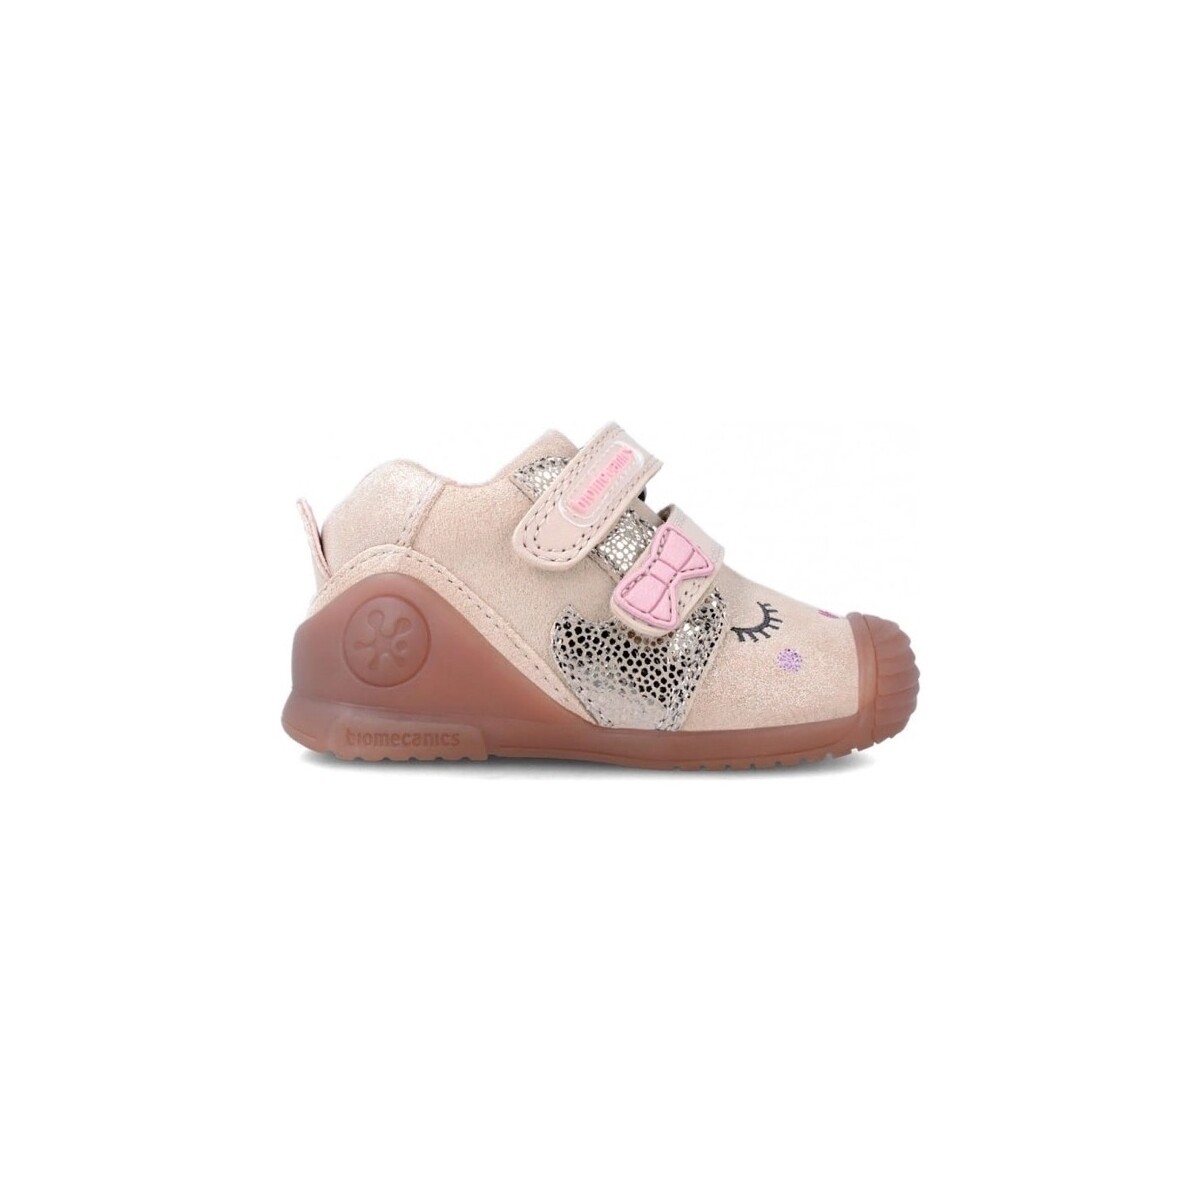 Boty Děti Módní tenisky Biomecanics Baby Sneakers 231107-B - Serraje Laminado Růžová